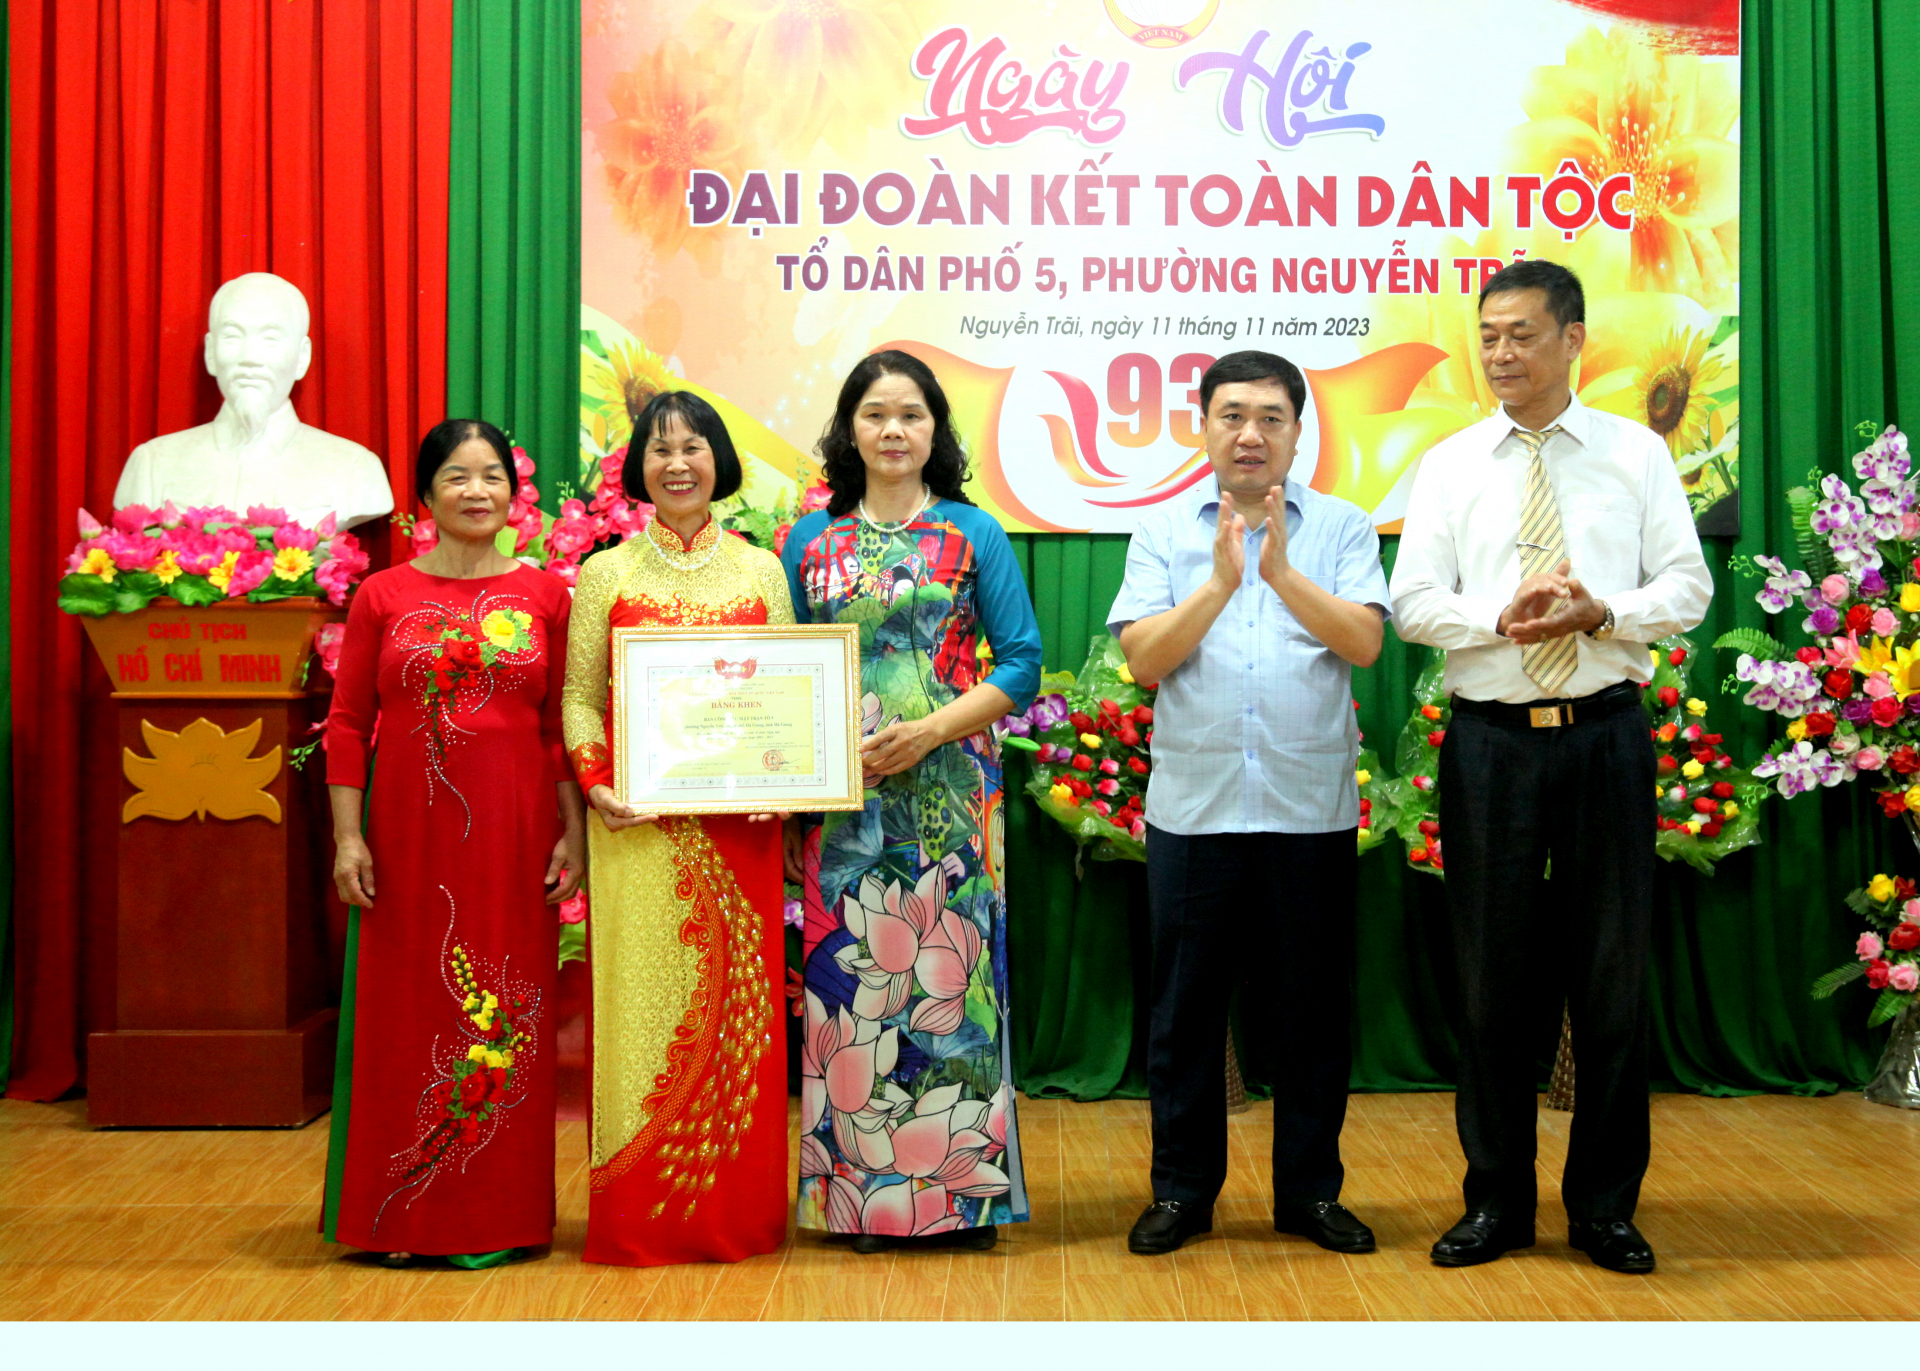 Quyền Bí thư Tỉnh ủy Nguyễn Mạnh Dũng trao Bằng khen cho Ban Mặt trận Tổ quốc tổ 5 về thành tích xuất sắc trong 20 năm tổ chức Ngày hội Đại đoàn kết toàn dân.
